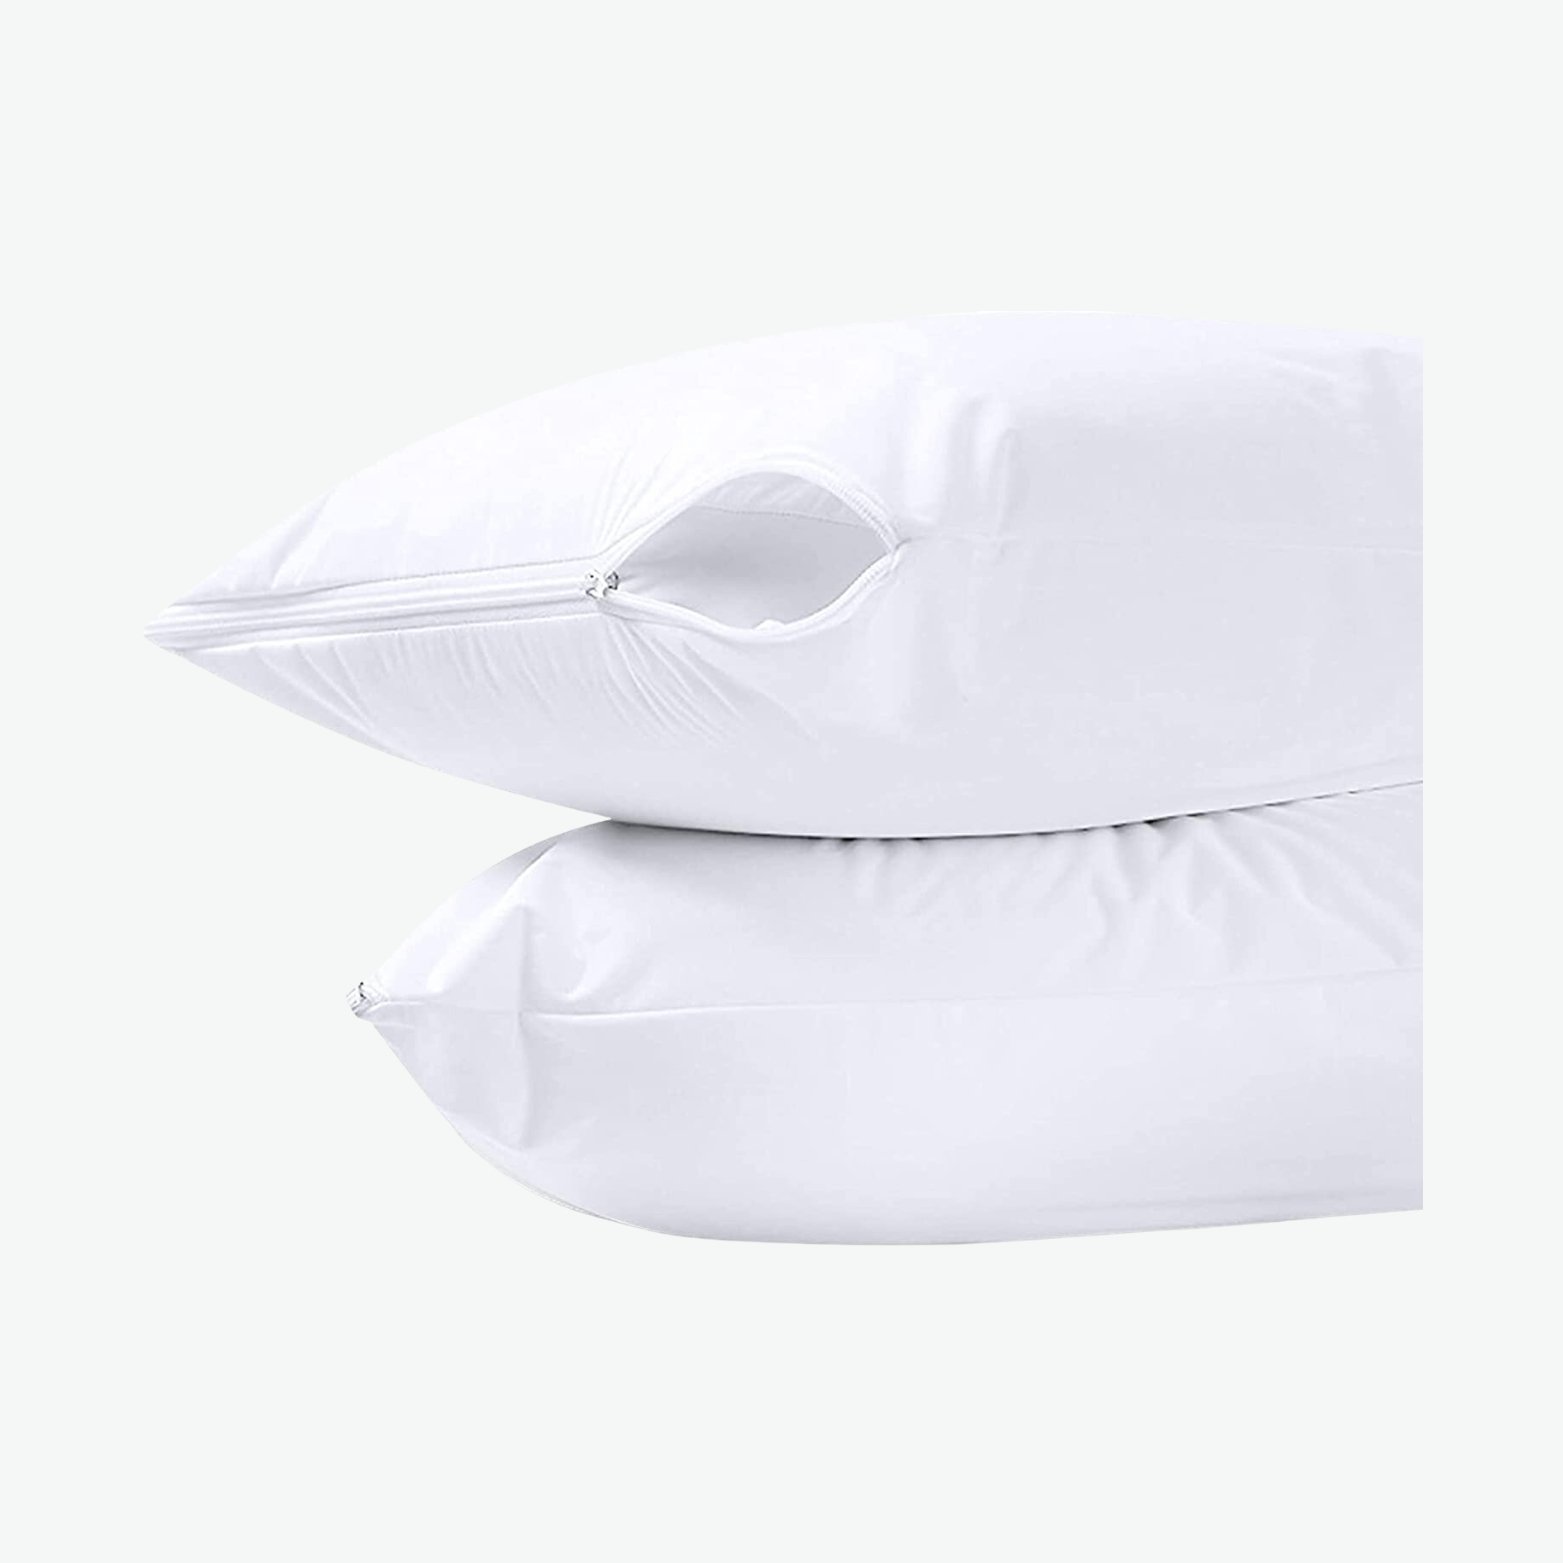 Waterproof Pillow Covers.jpg